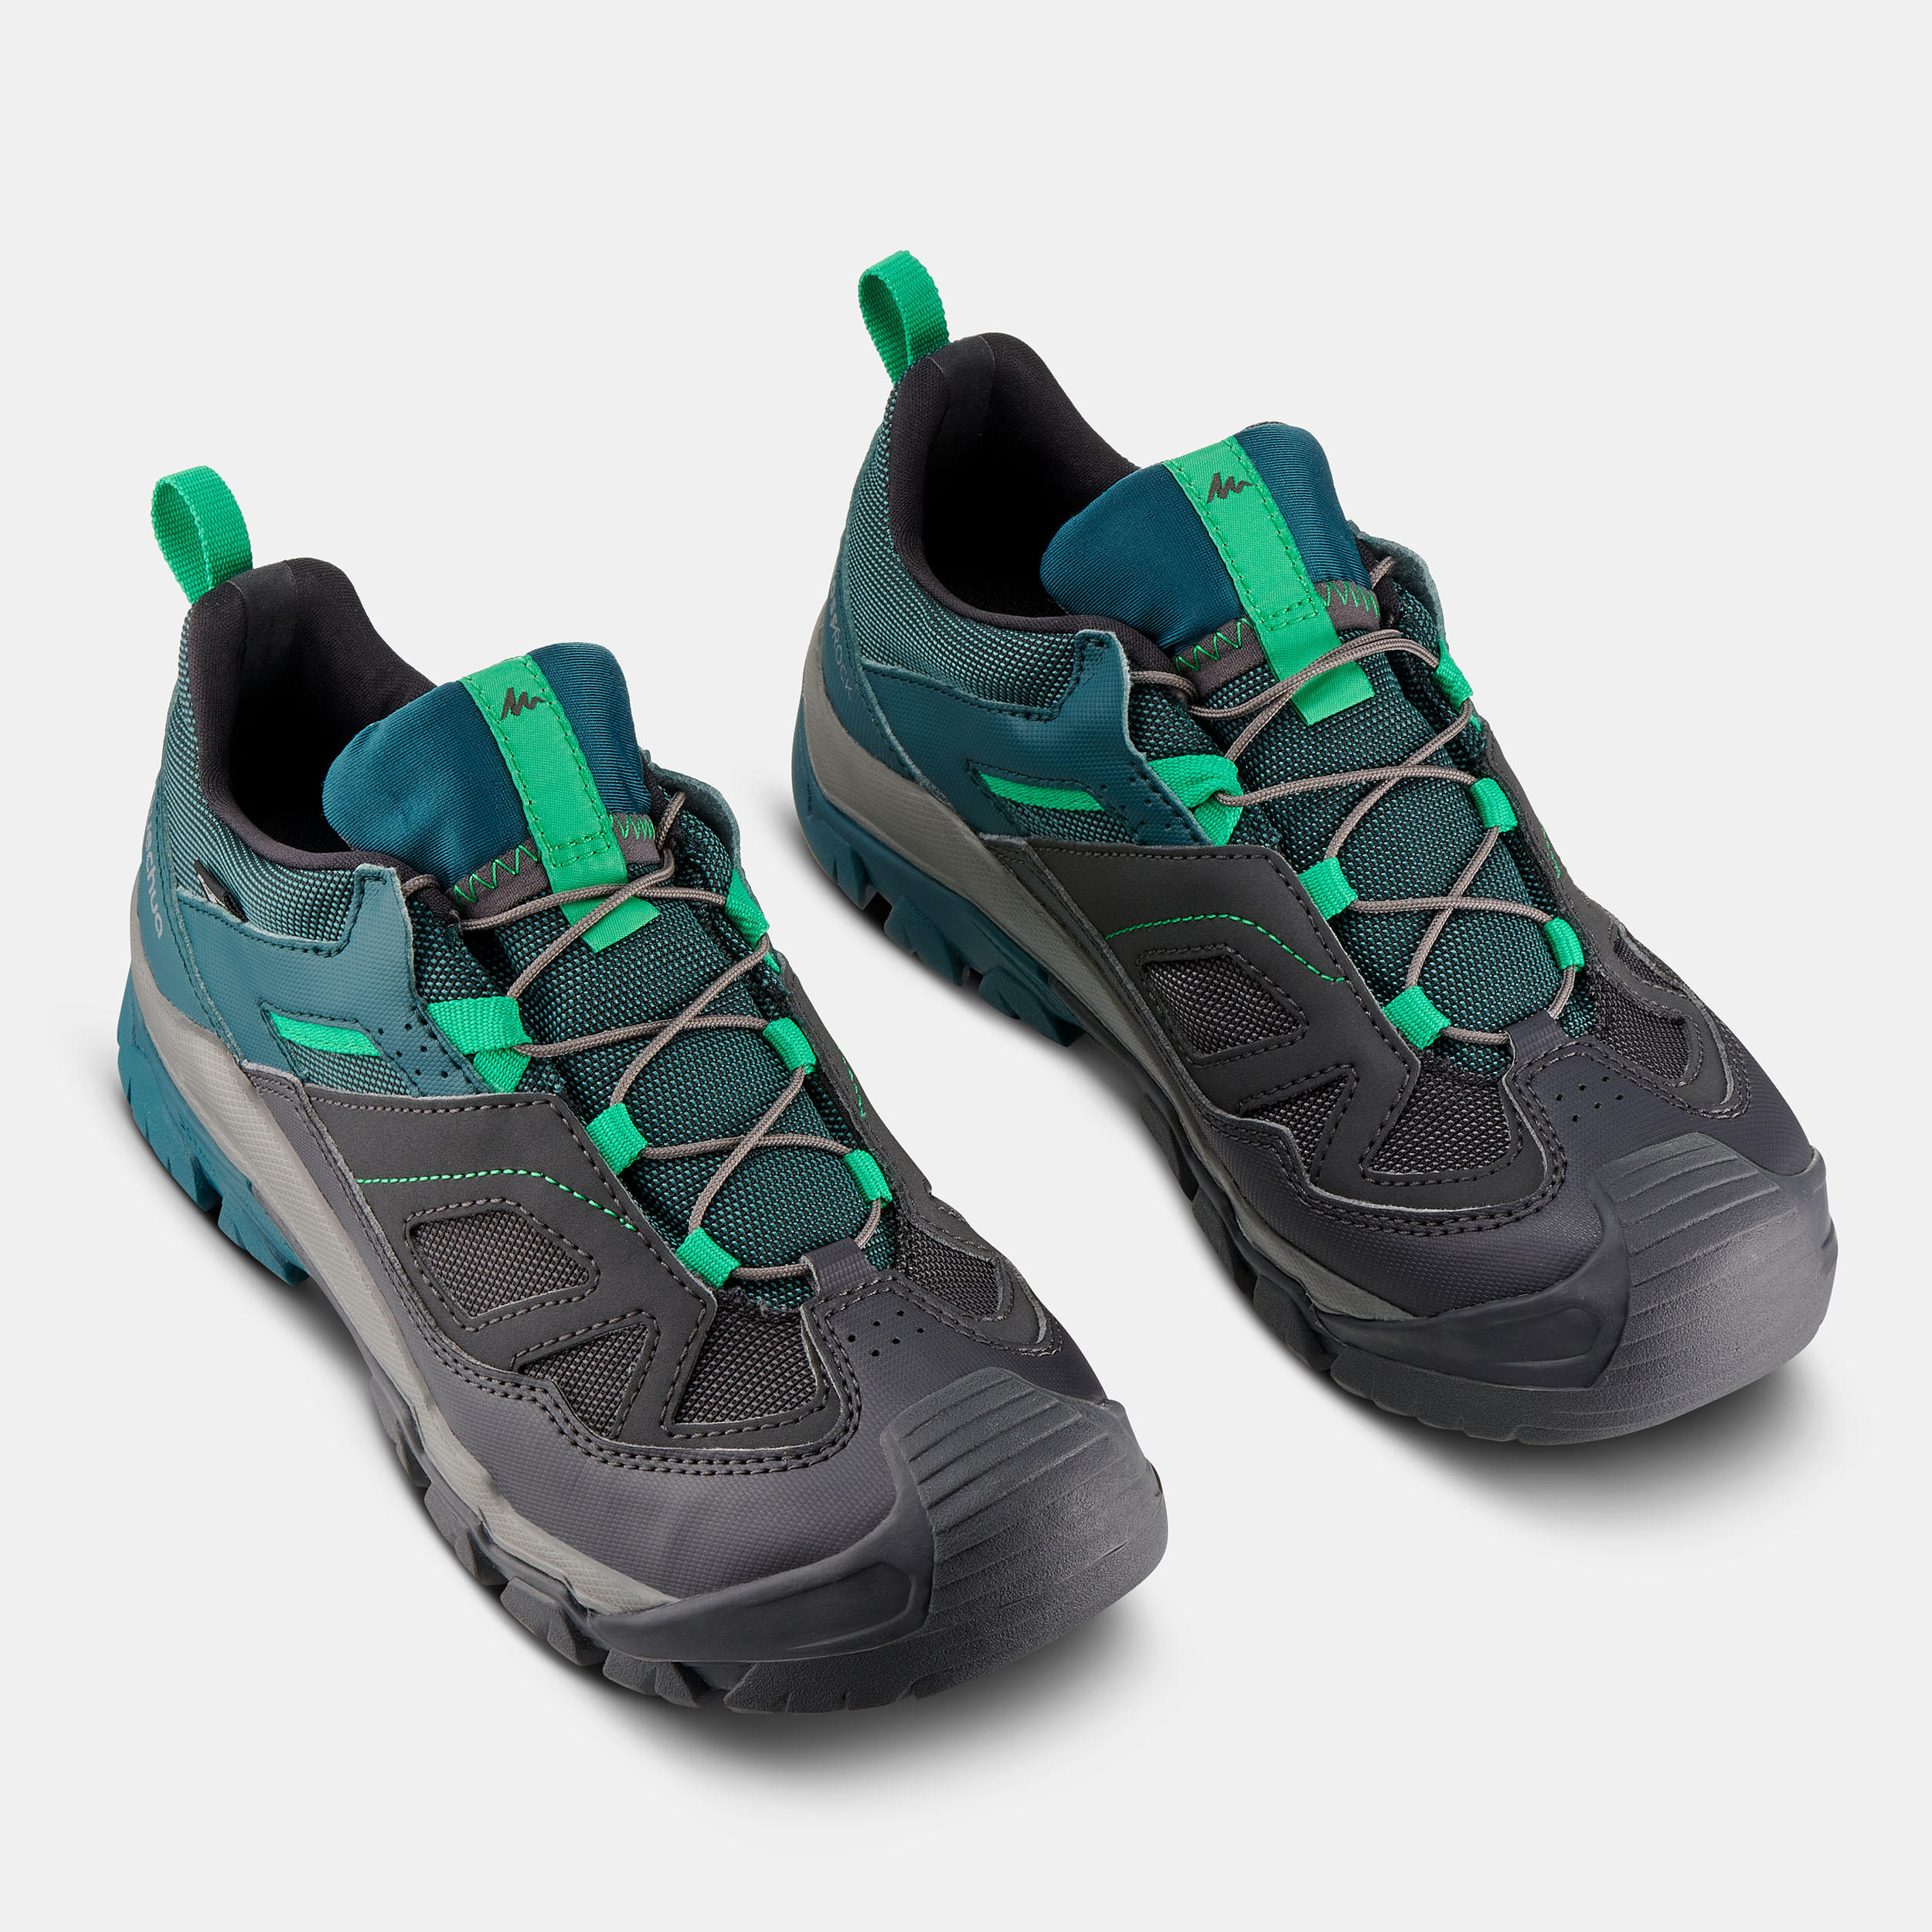 Chaussures de randonnée avec lacet enfant – Crossrock vert - QUECHUA